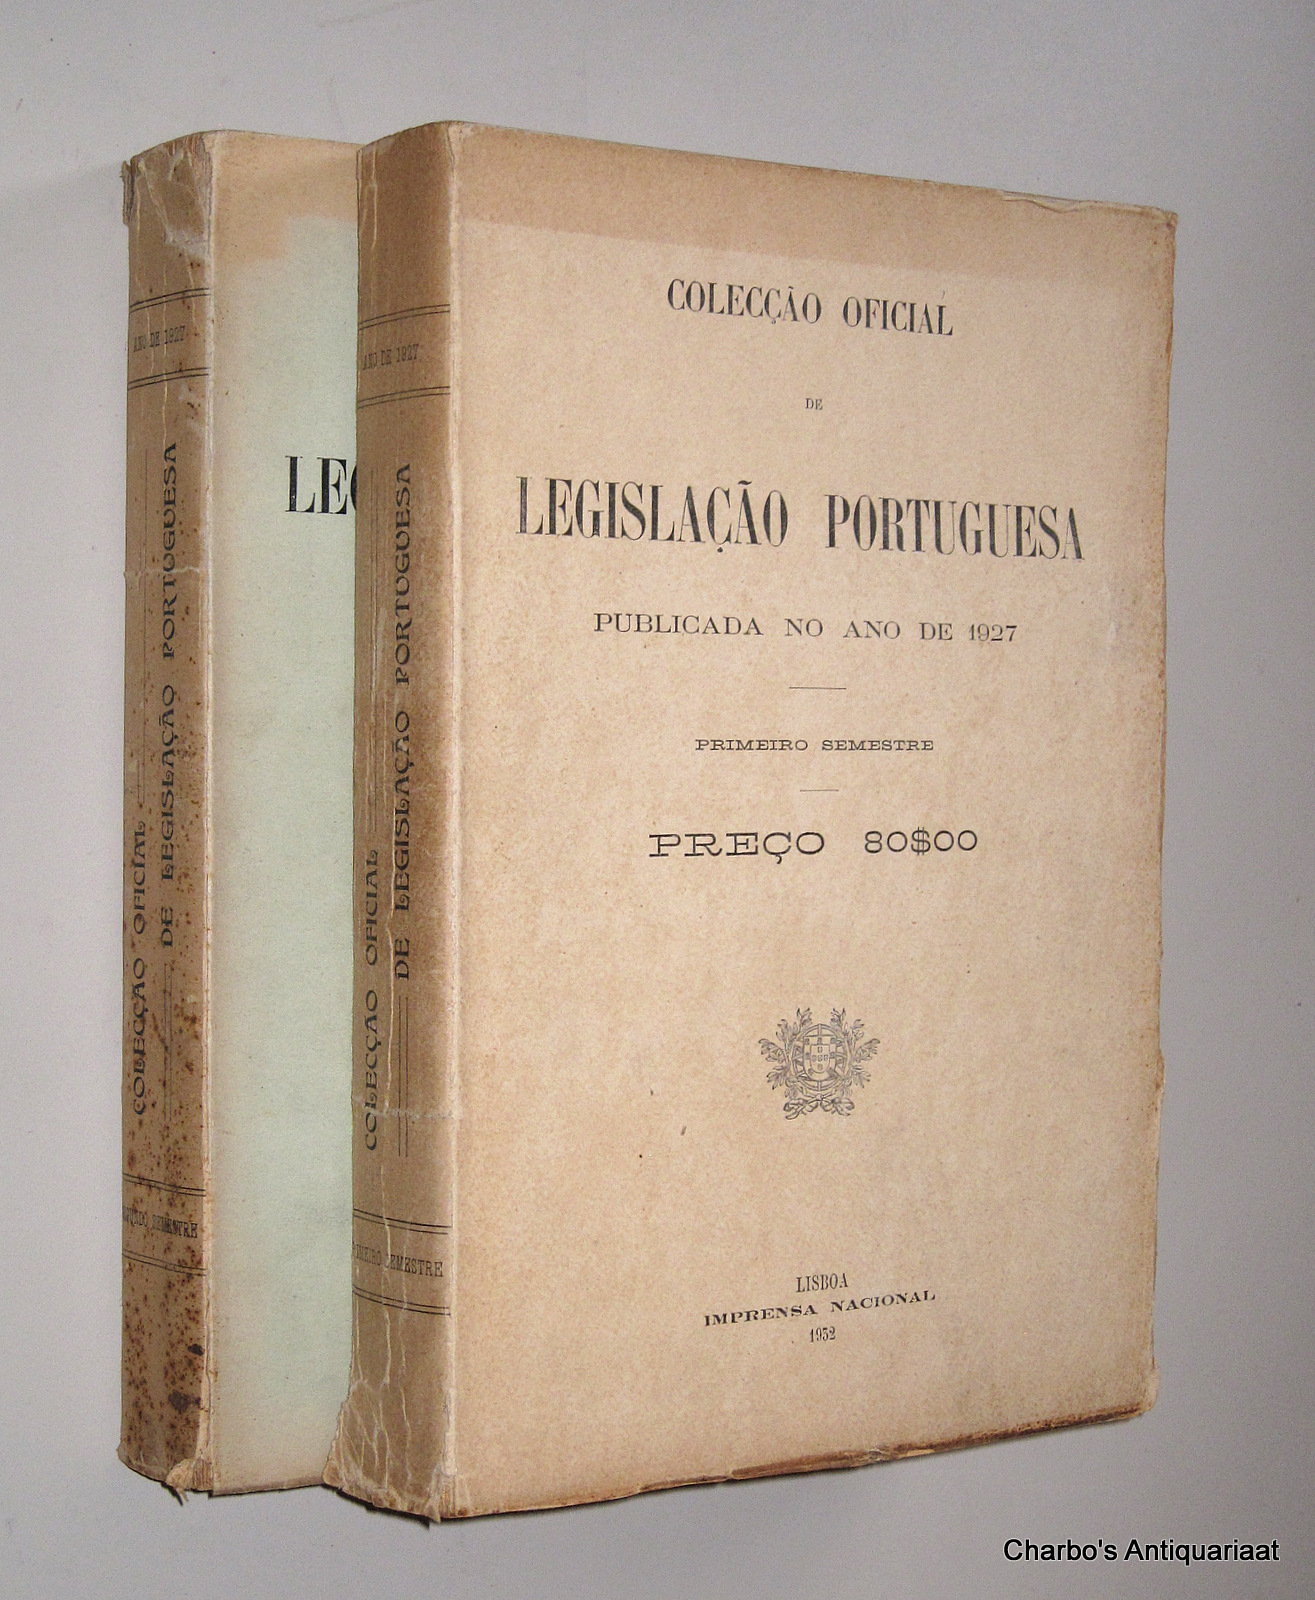 N/A, -  Coleco oficial de legislao portuguesa, publicada no ano de 1927. Primeiro & segundo semestre.